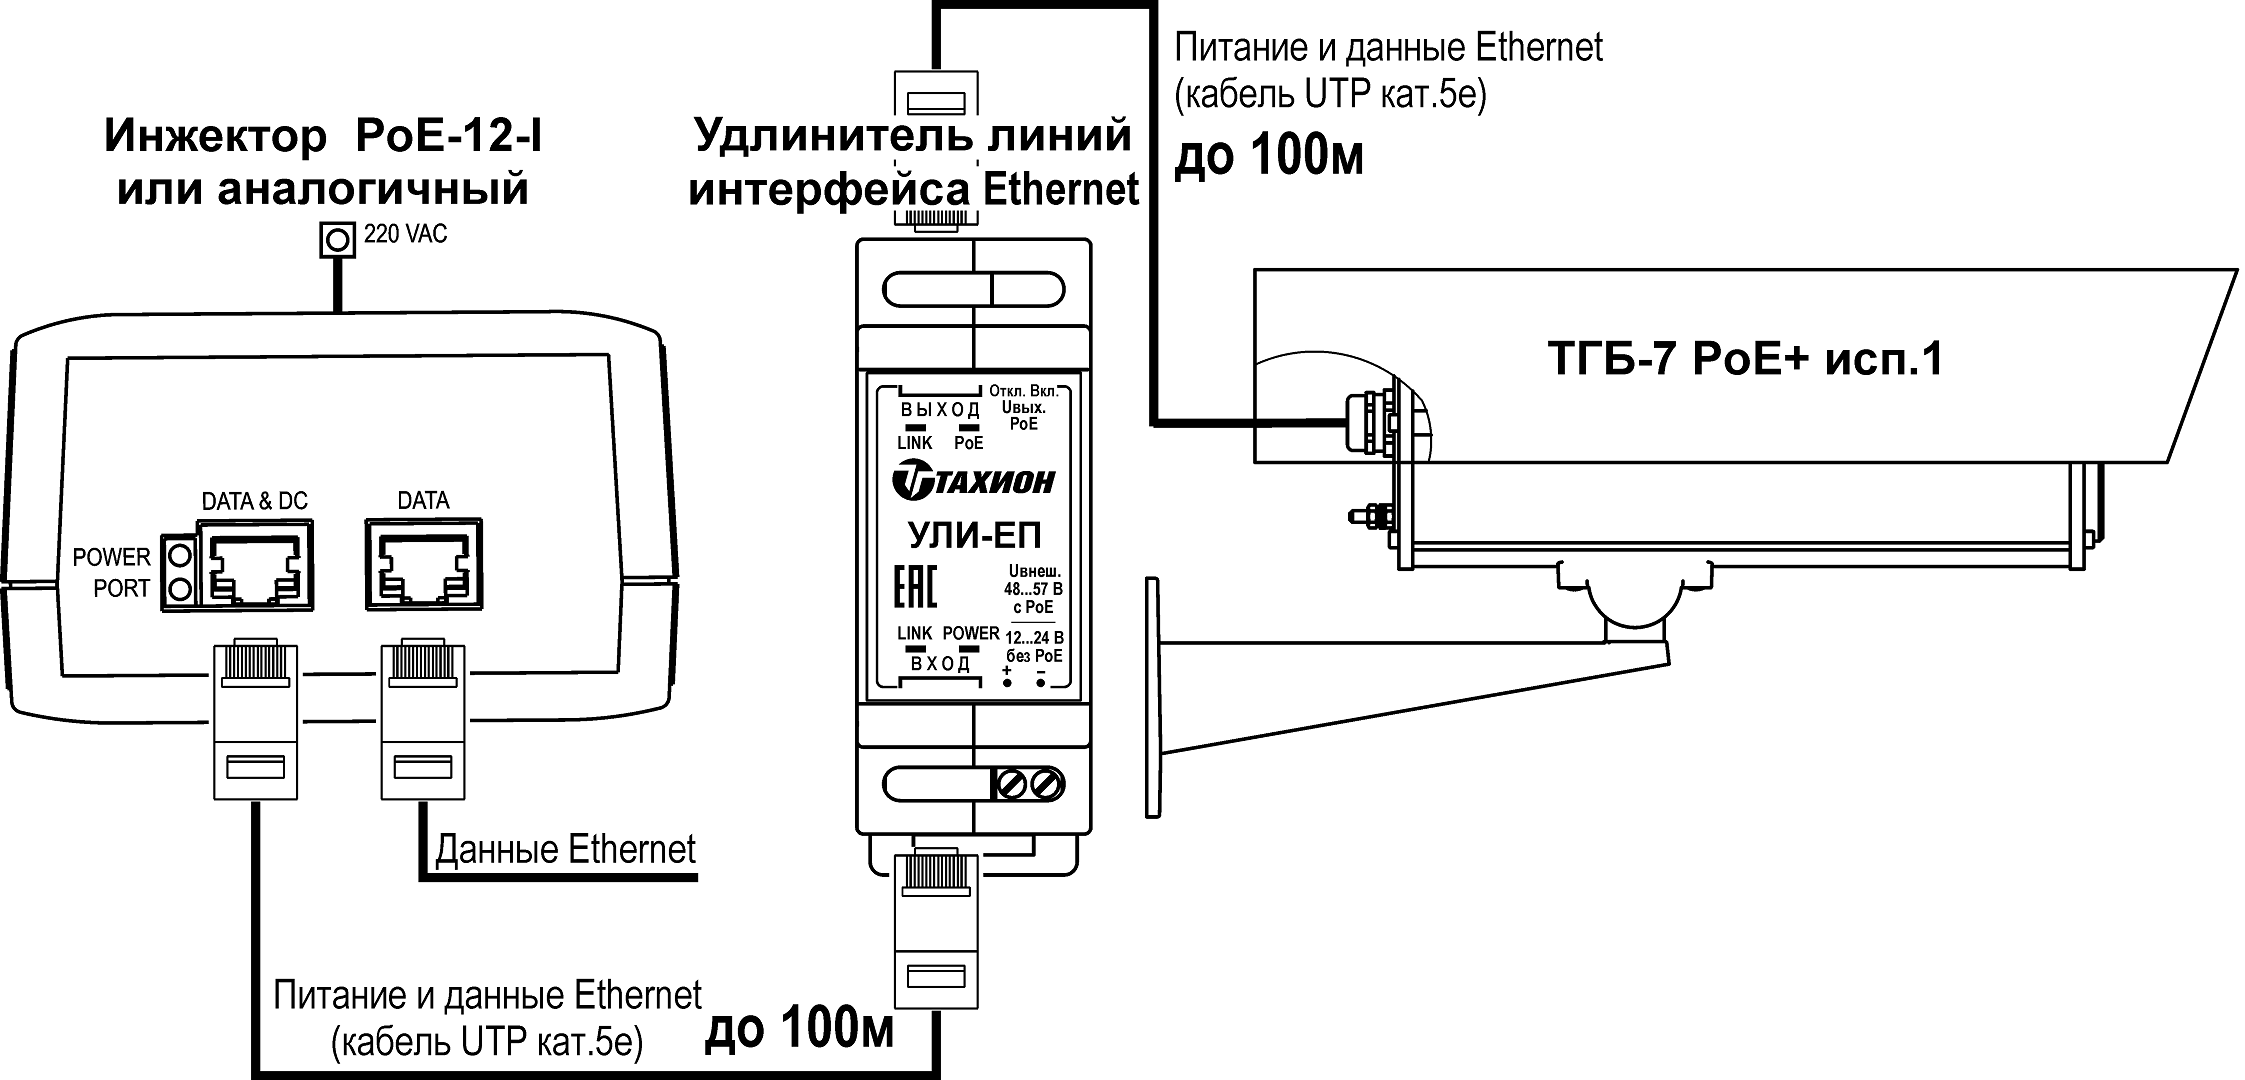 Пример подключения гермобокса ТГБ-7 PoE исп1 с УЛИ-ЕП